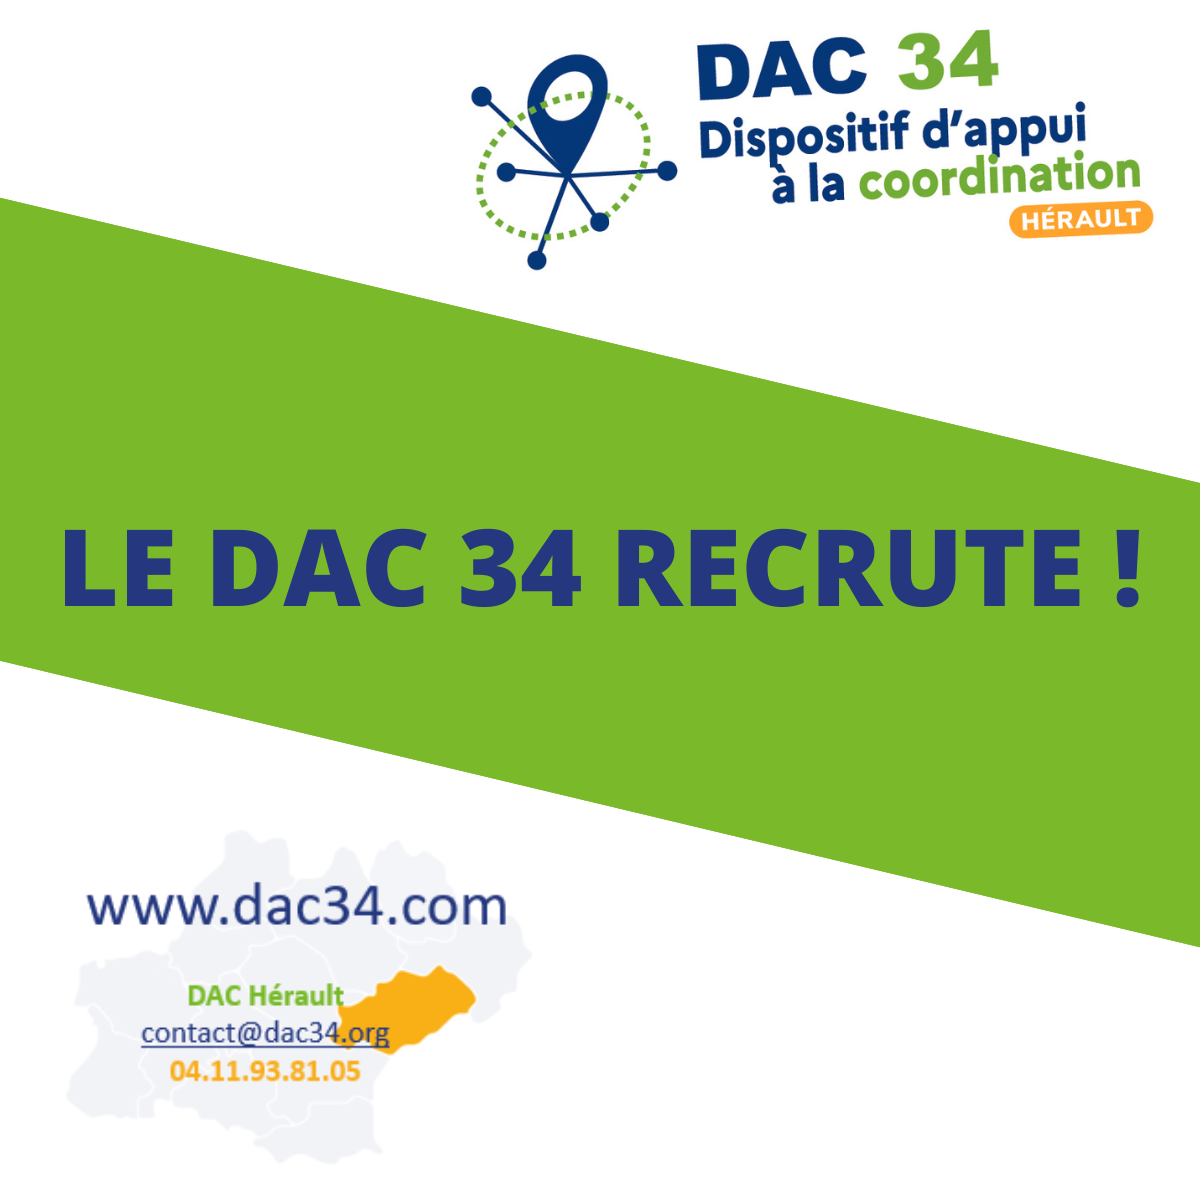 DAC 34 Recrute